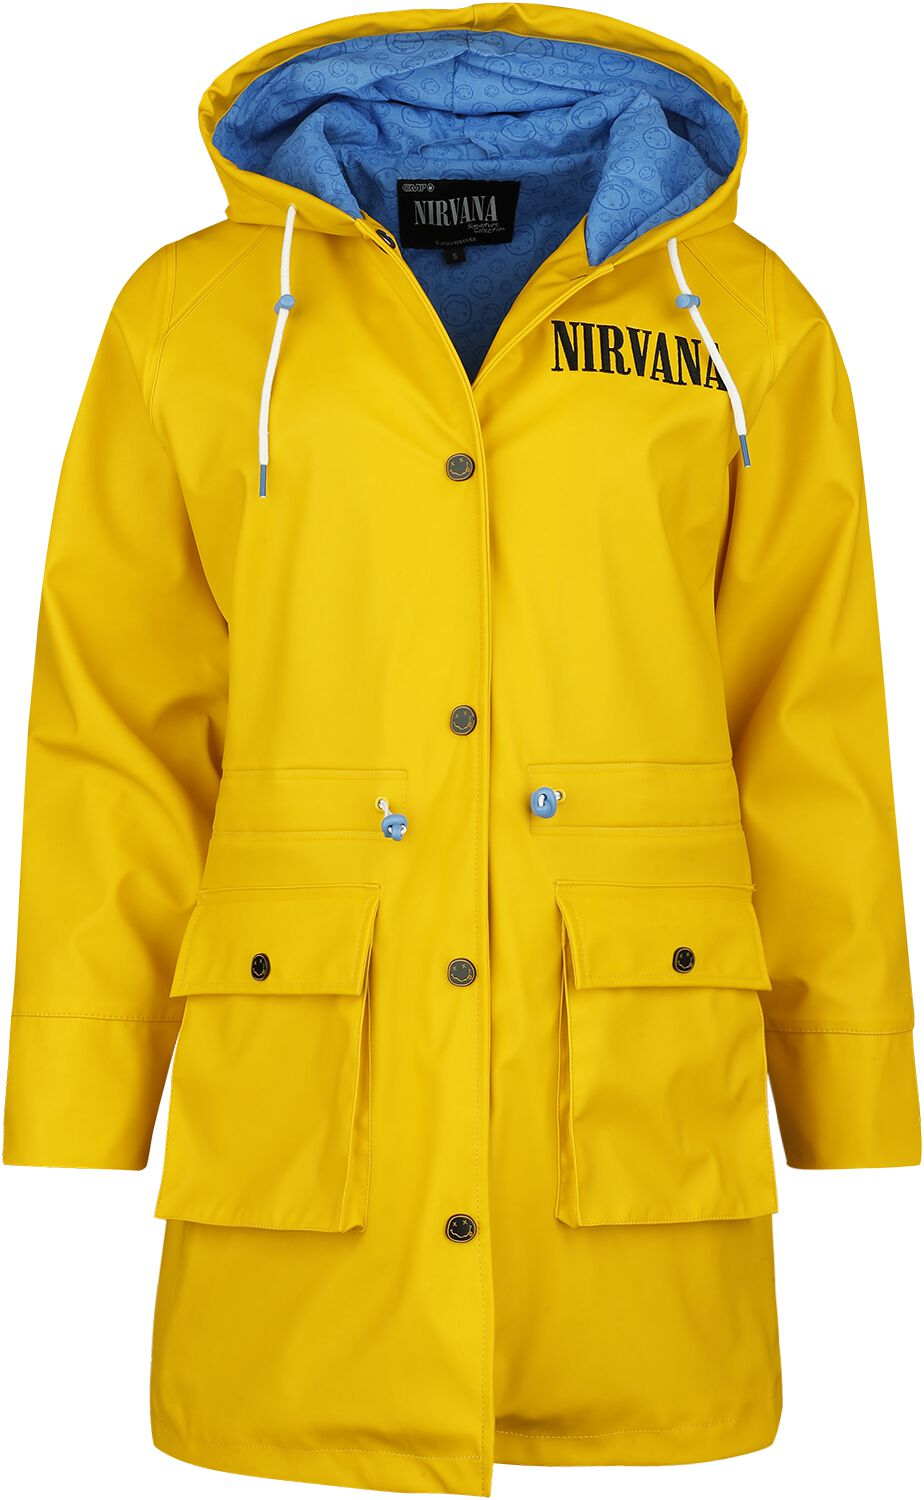 Nirvana EMP Signature Collection Regenmantel gelb in M von Nirvana